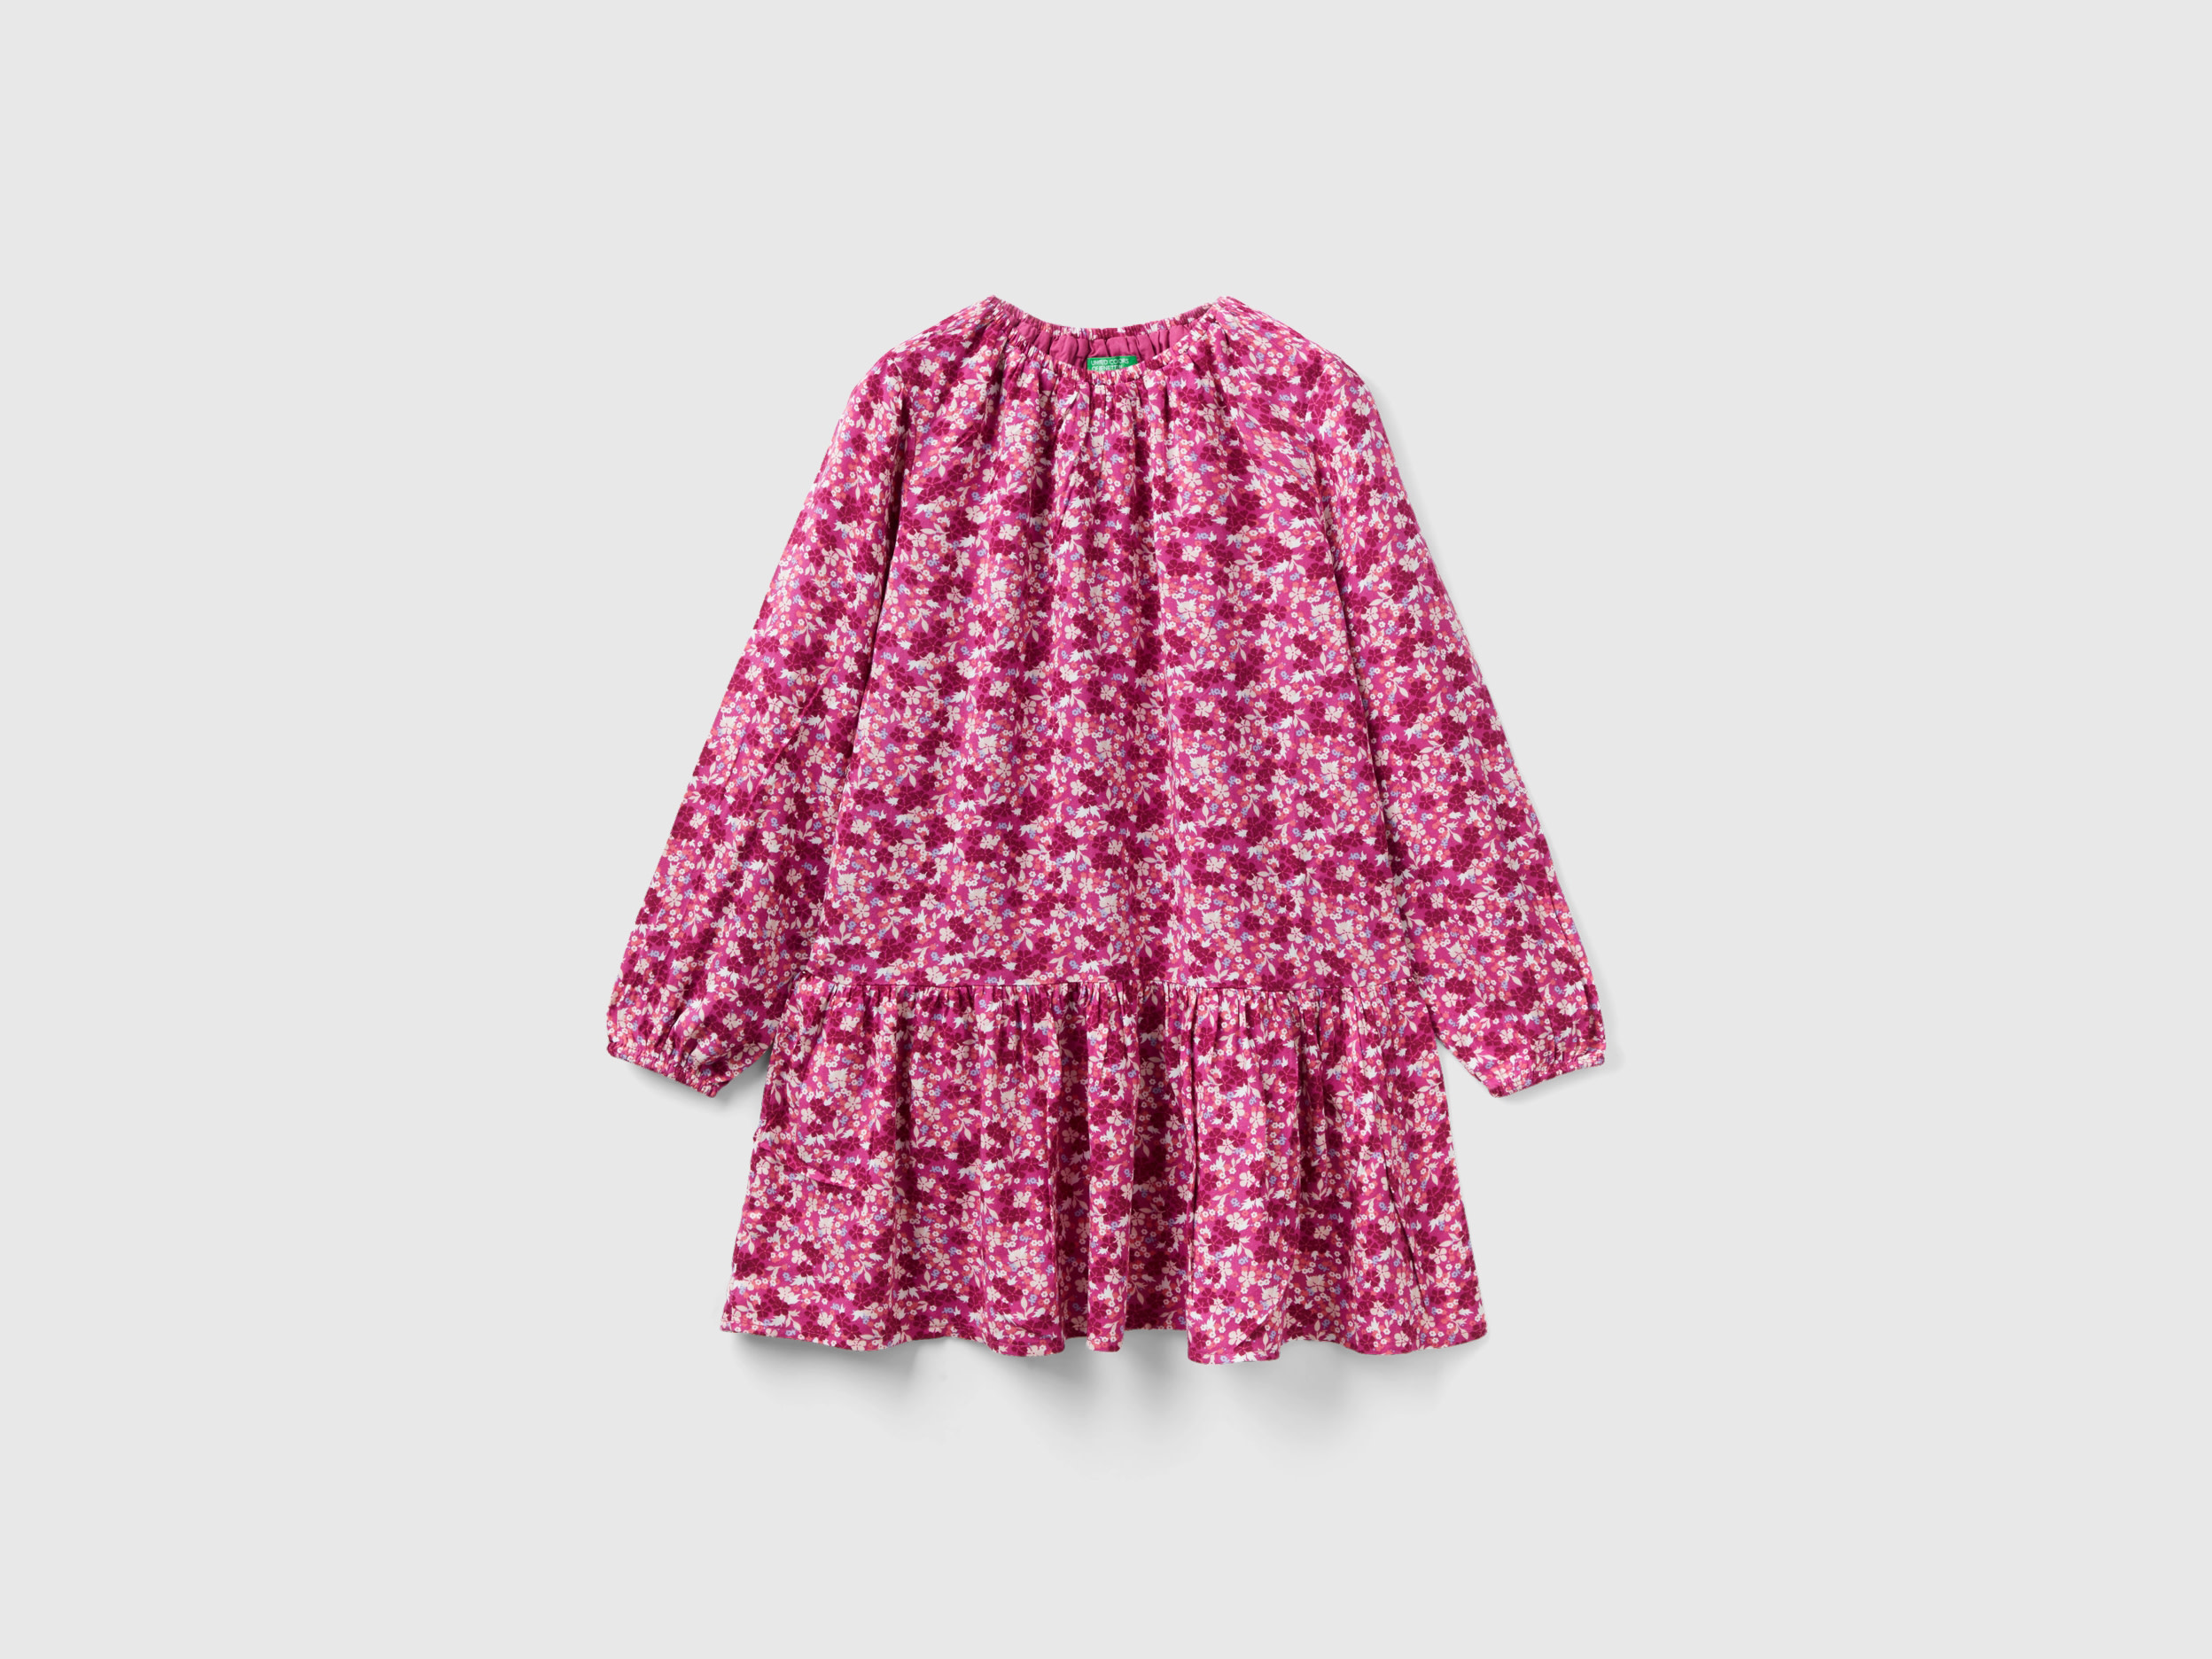 Benetton, Flowy Floral Dress, size 3XL, Multi-color, Kids